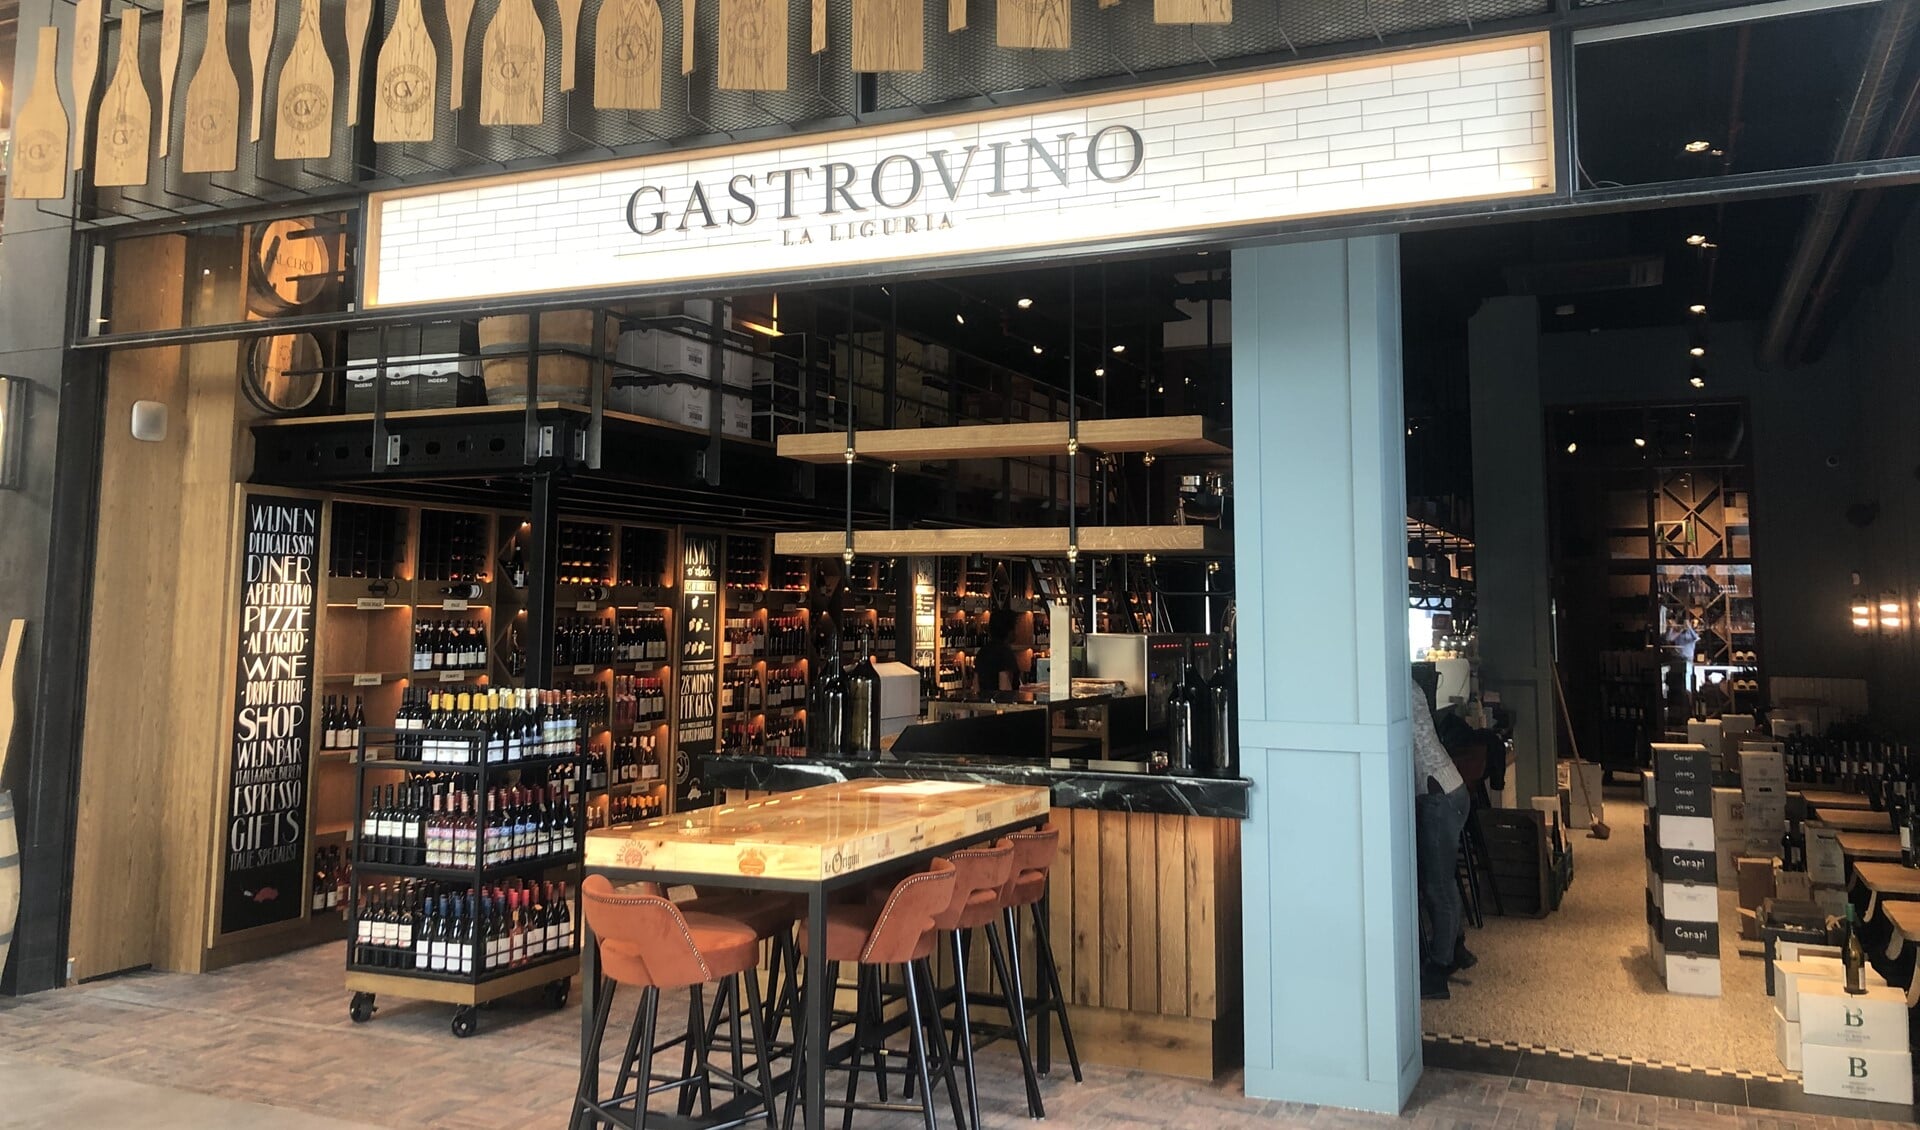 Morgen opent de prachtige wijnwinkel Gastrovino haar deuren. 